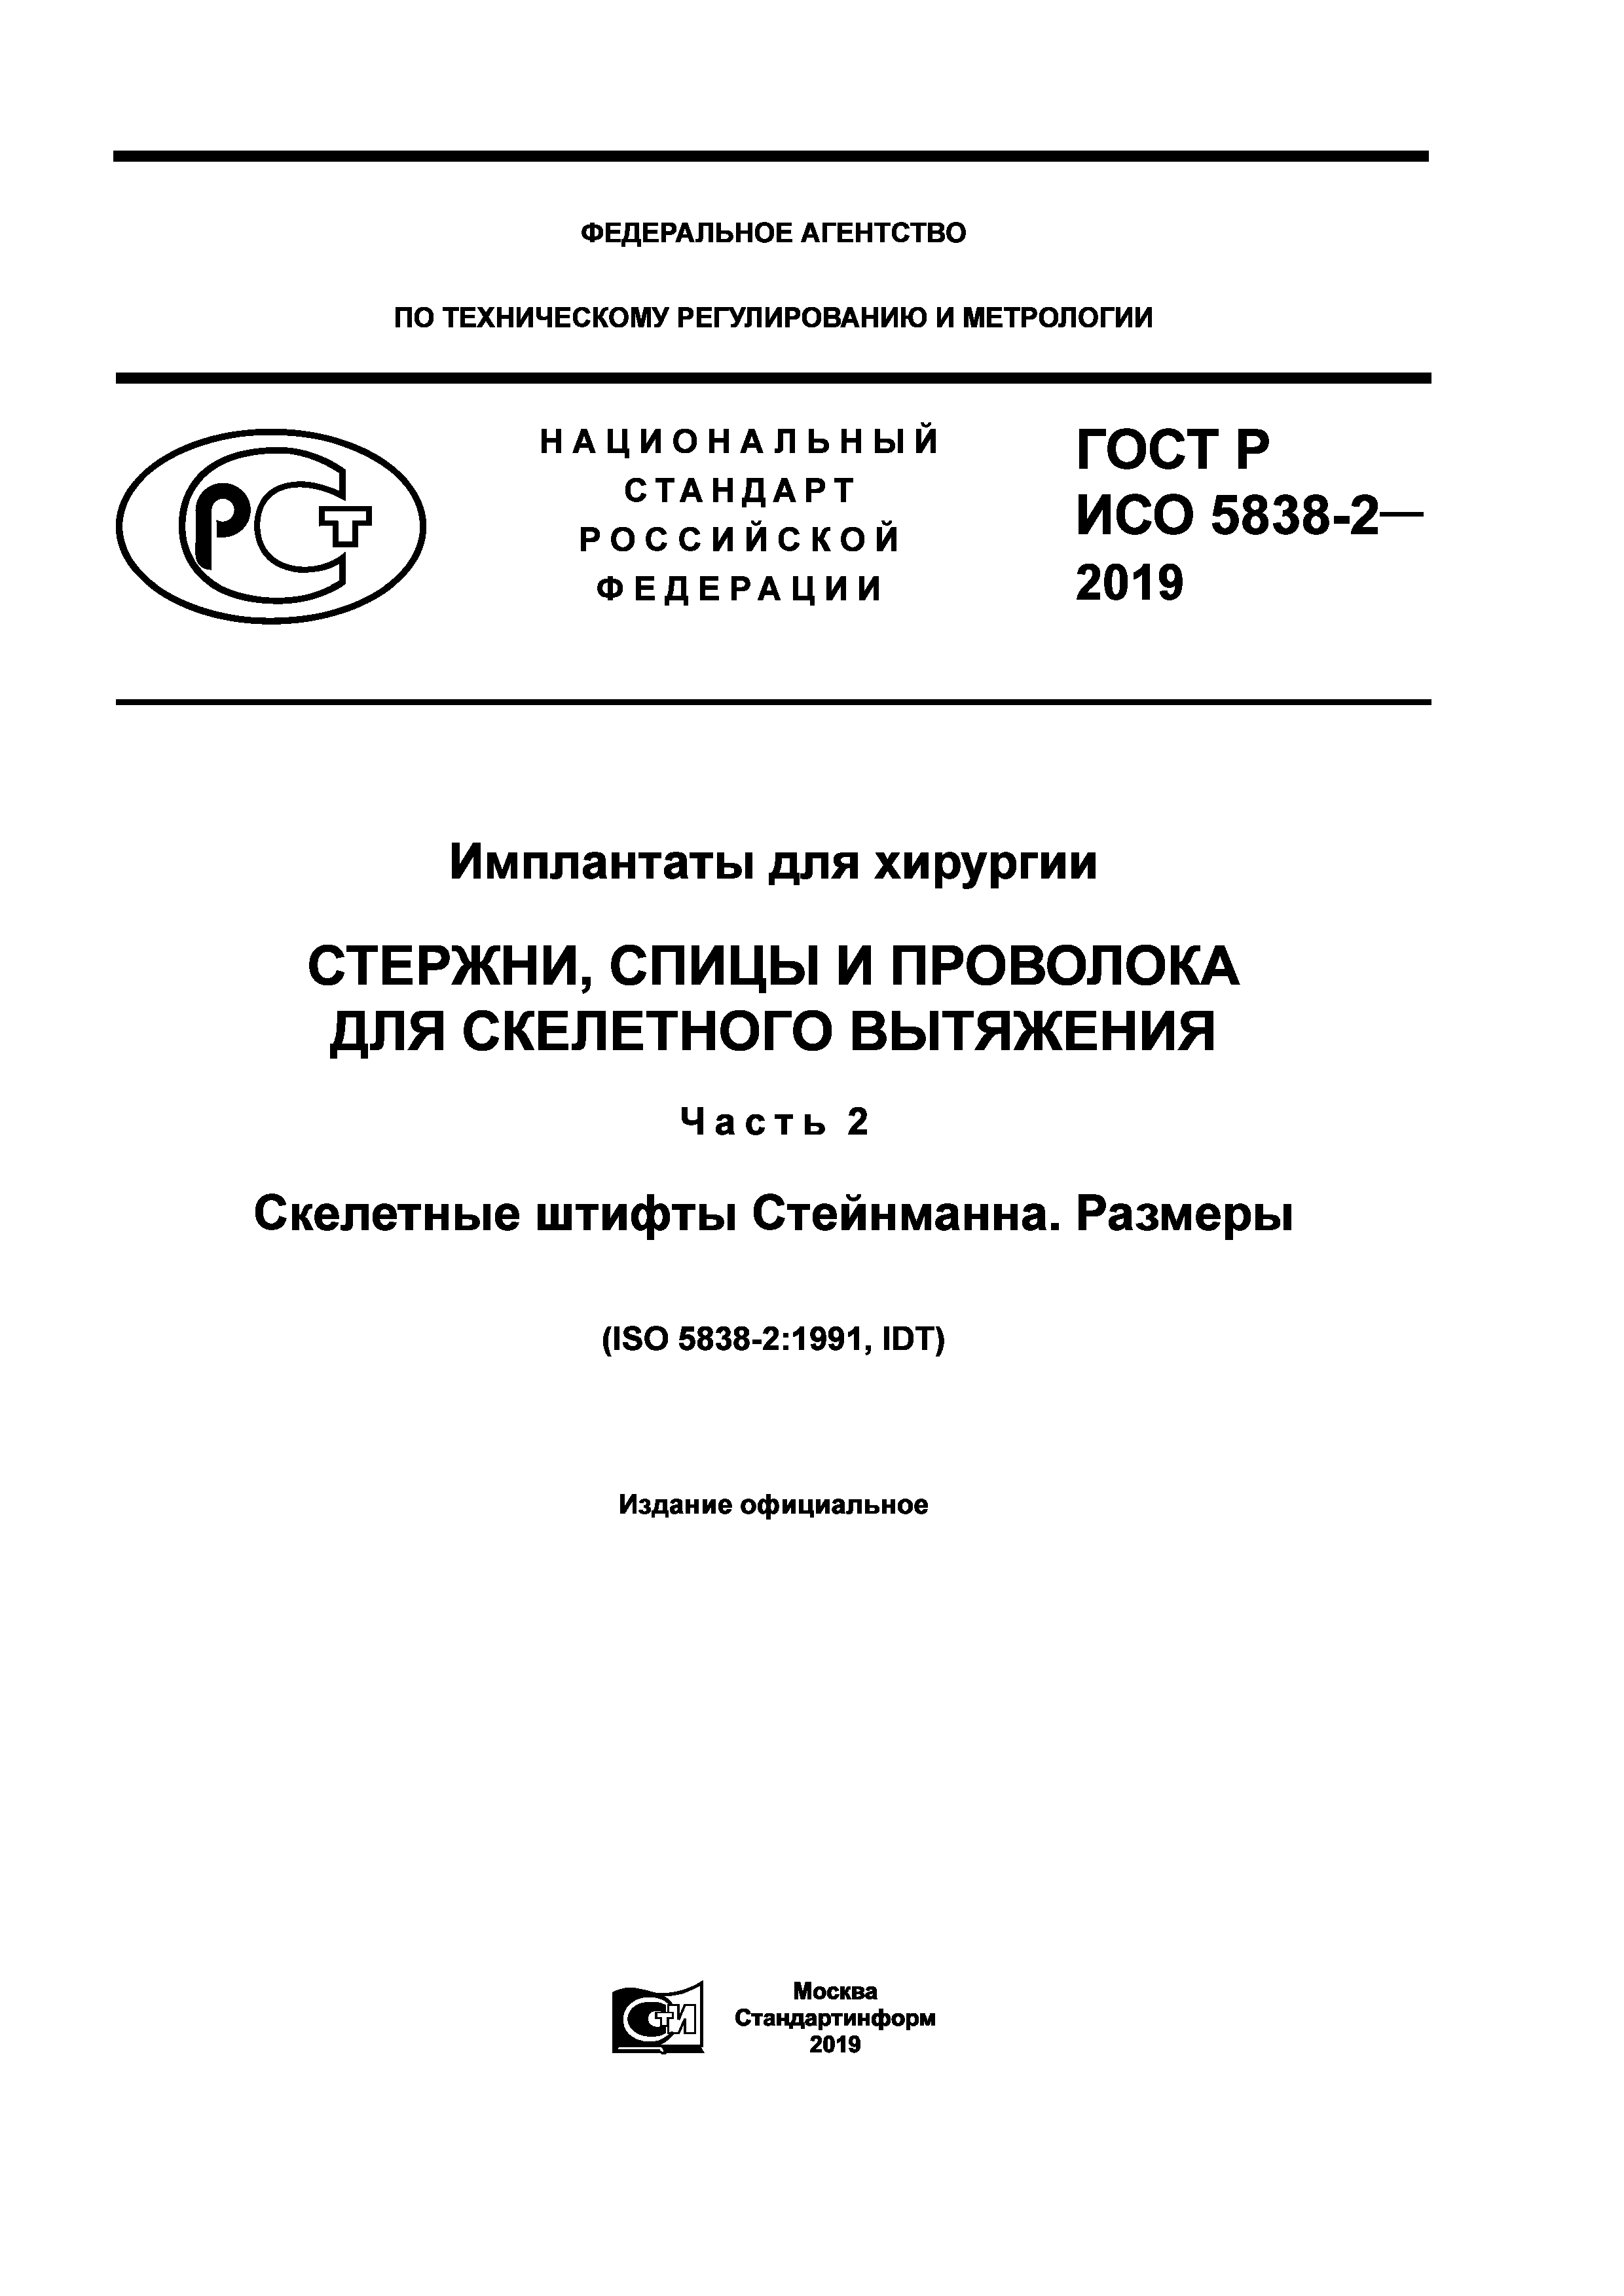 ГОСТ Р ИСО 5838-2-2019